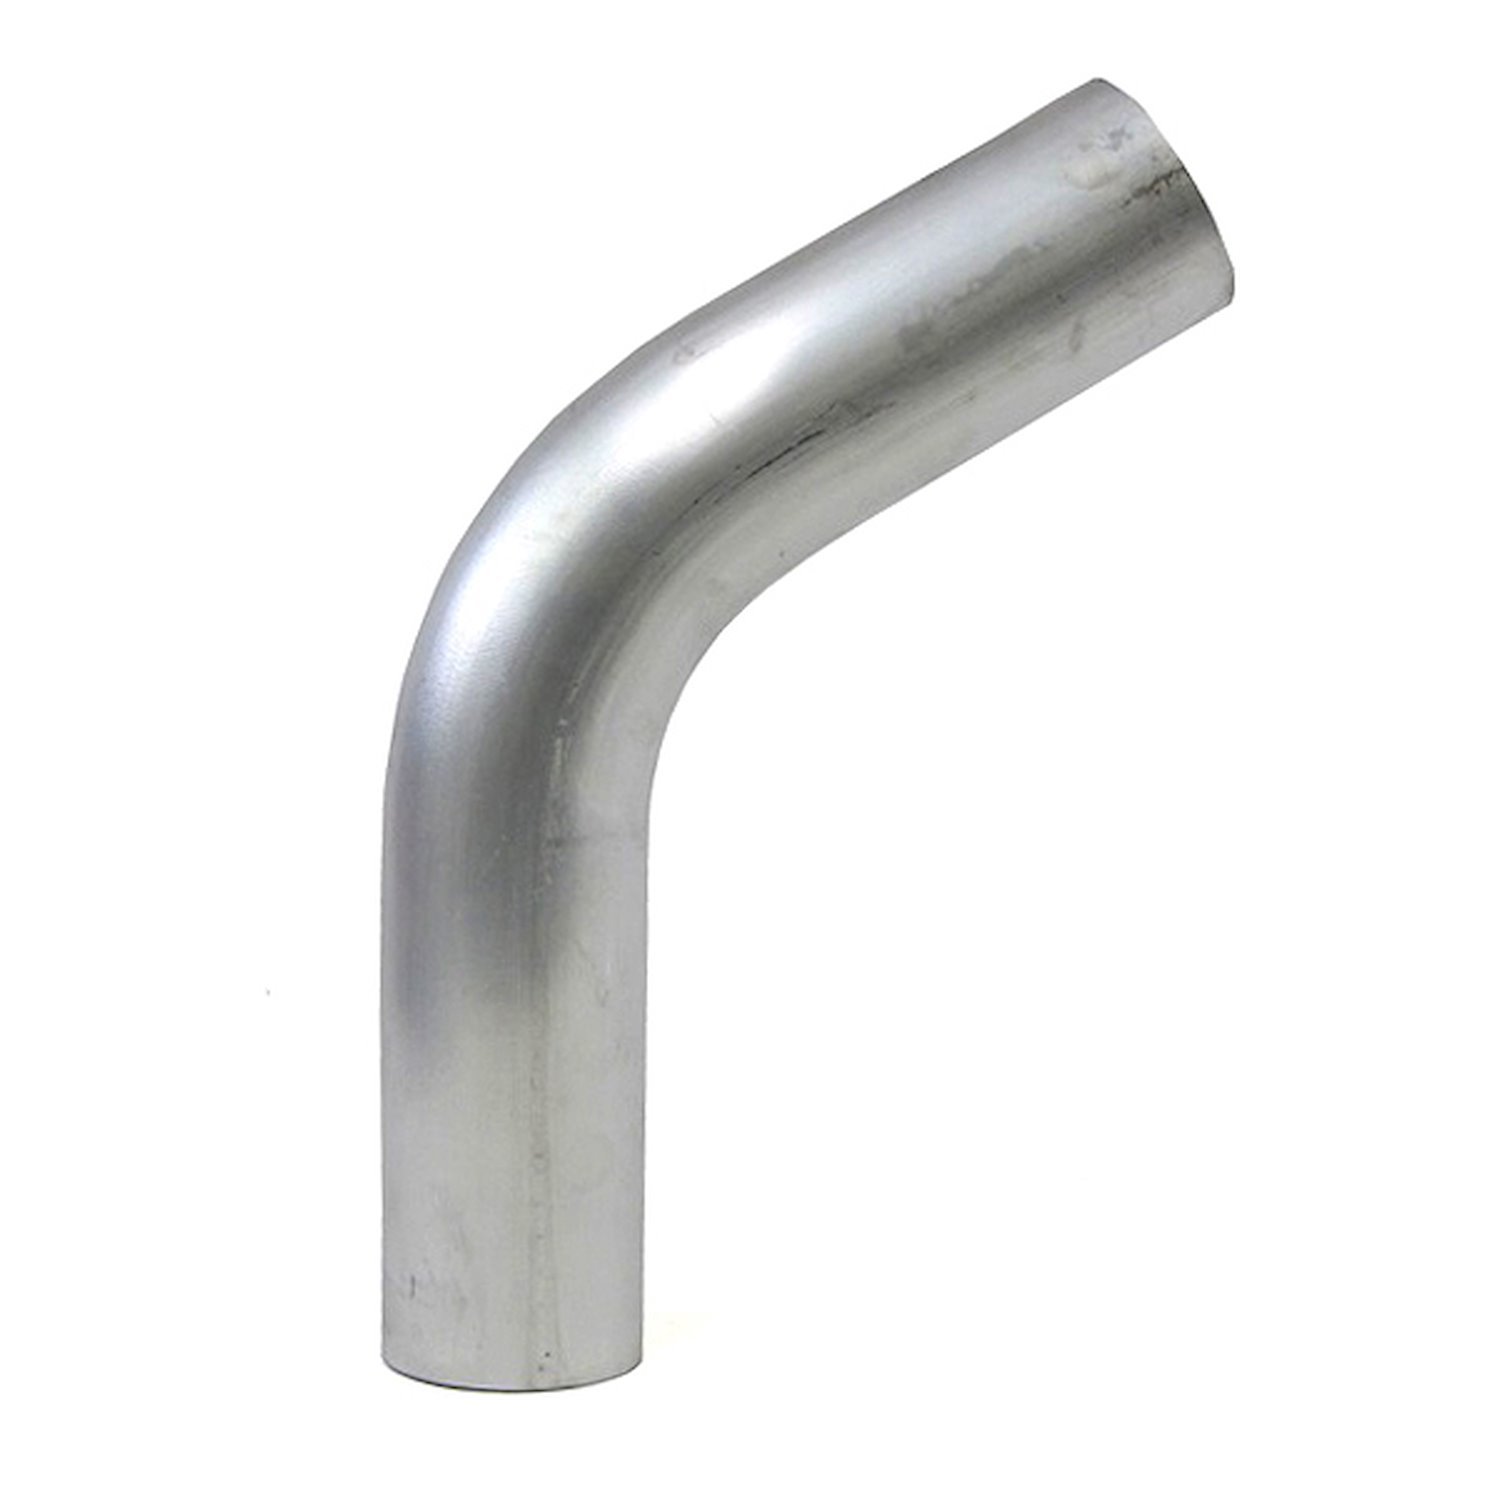 AT60-350-CLR-56 Aluminum Elbow Tube, 6061 Aluminum, 60-Degree Bend Elbow Tubing, 3-1/2 in. OD, Large Radius, 5-5/8 in. CLR